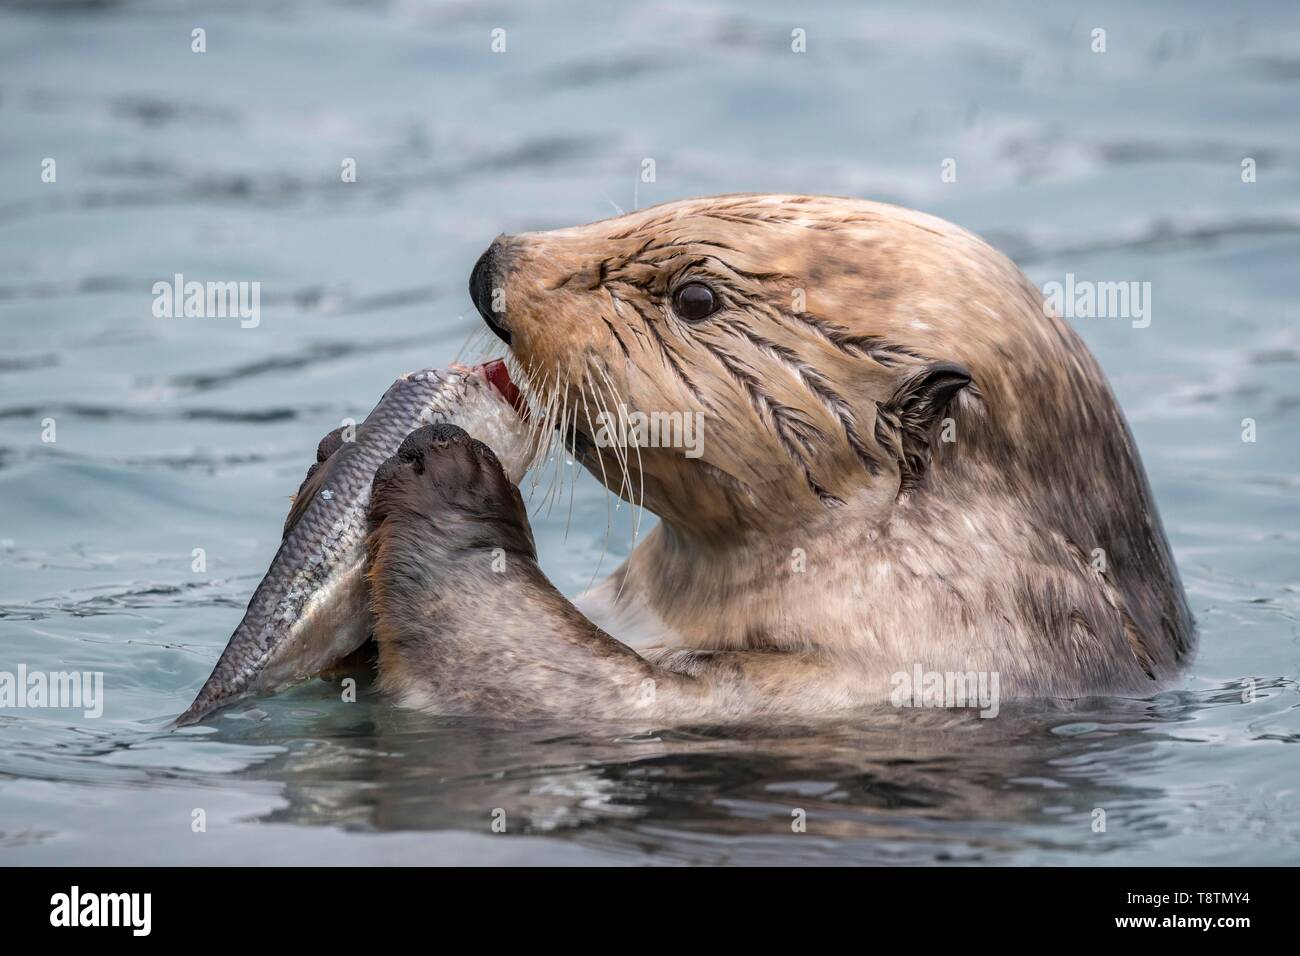 Sea Otter (Enhydra lutris) mangia il pesce catturato, animale ritratto in acqua, Seward, Alaska, STATI UNITI D'AMERICA Foto Stock